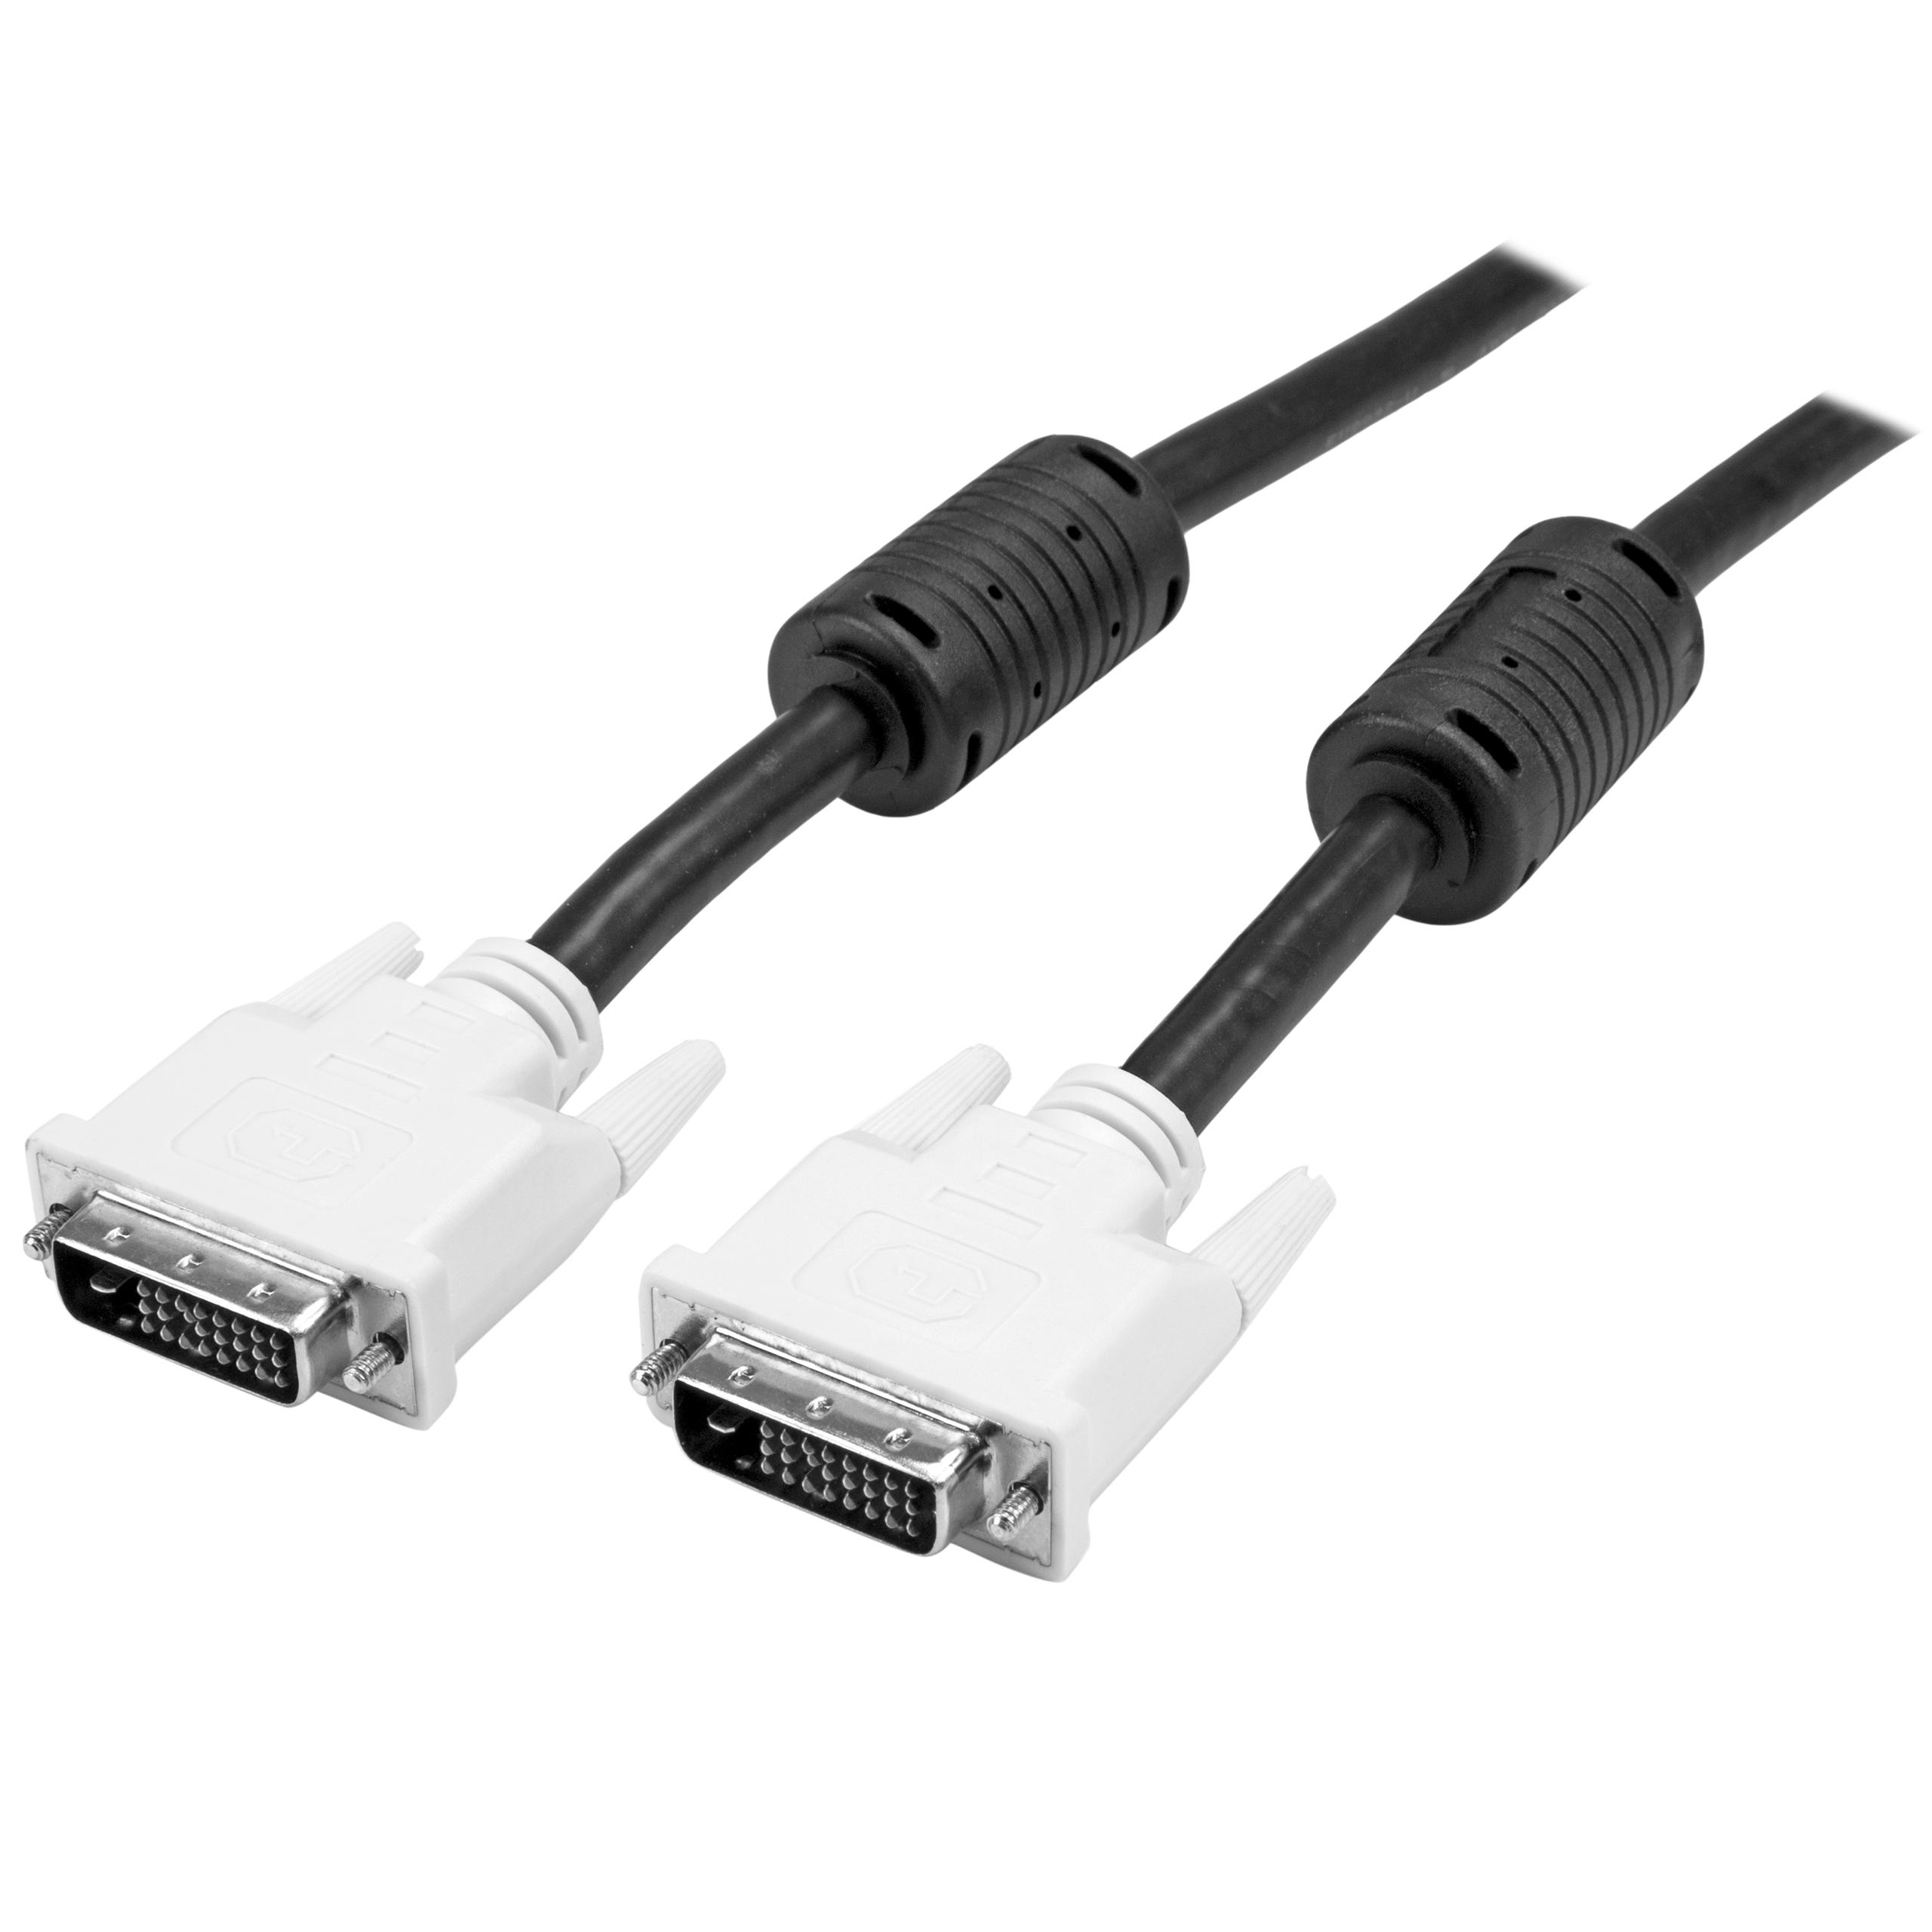 Amazon.com: StarTech.com DVIDDMM20 Dual Link DVI Cable - 20 ft ...